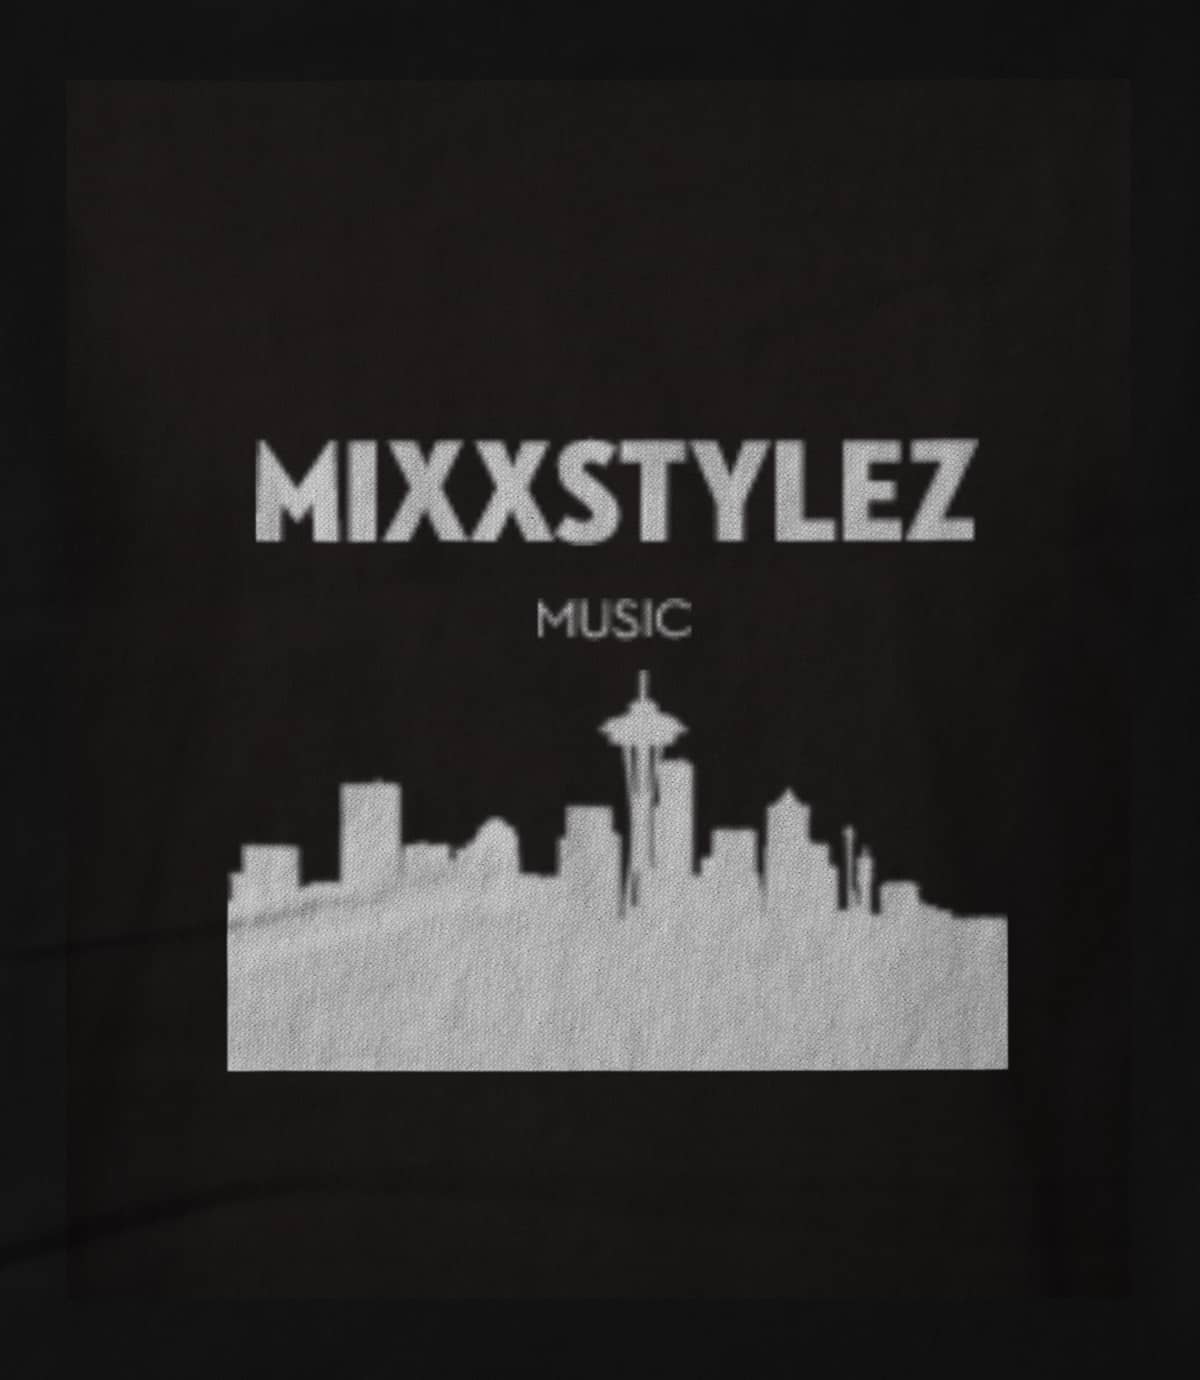 Mixxstylez